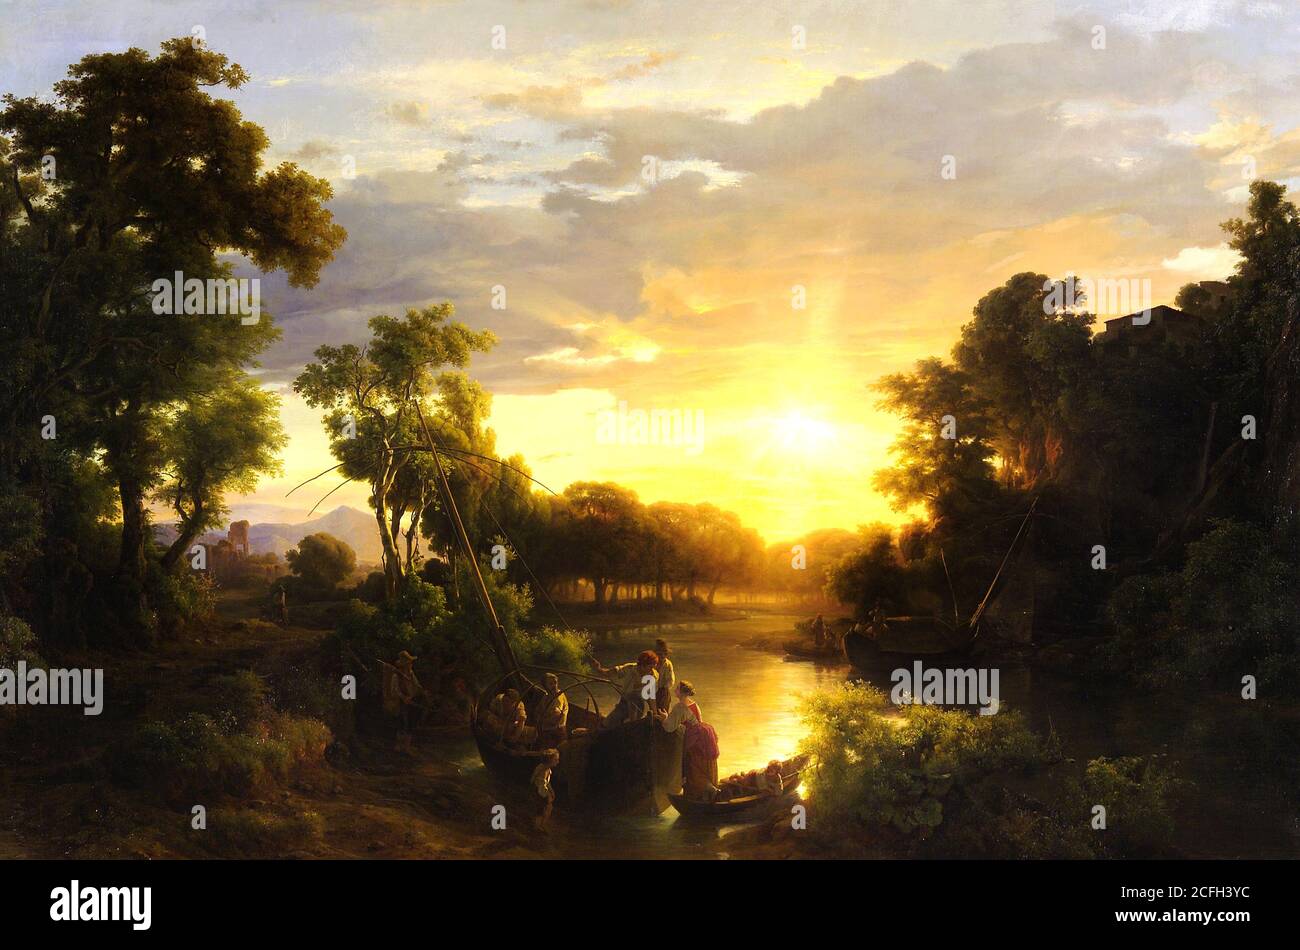 Marko Karoly, paysages italiens au coucher du soleil, pêcheurs 1851 huile sur toile, Galerie nationale hongroise, Budapest, Hongrie. Banque D'Images